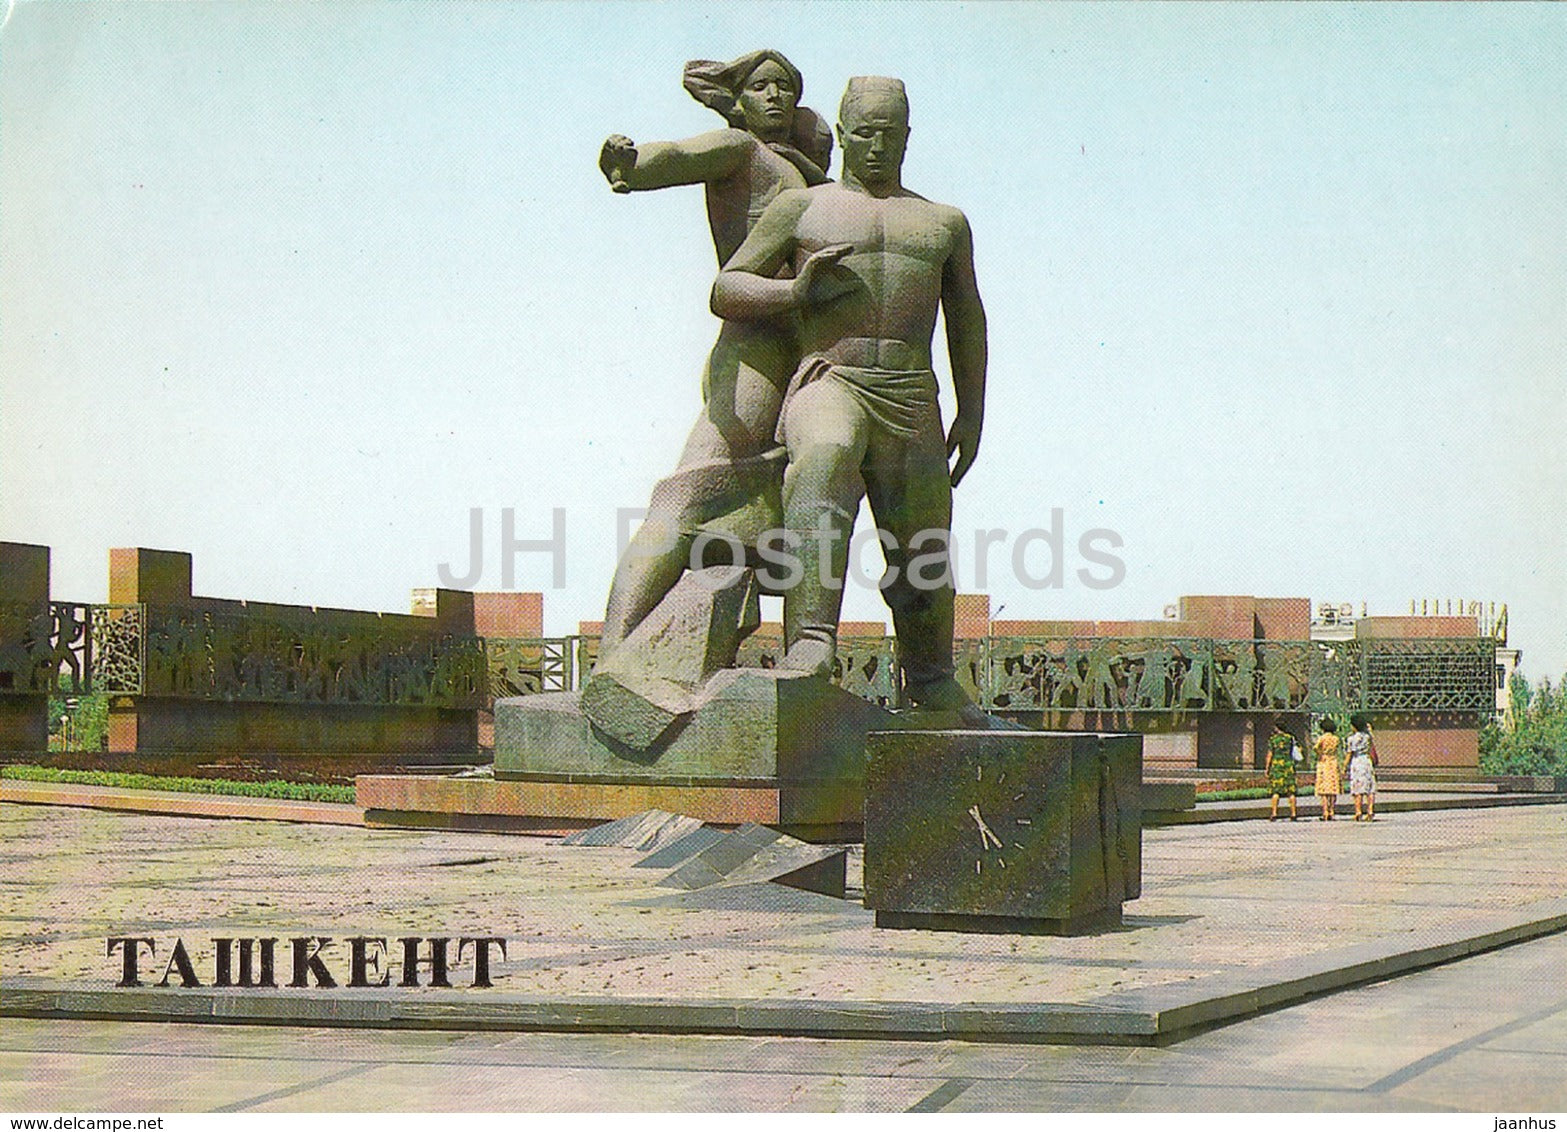 Tashkent - Courage Memorial - 1983 - Uzbekistan USSR - unused - JH Postcards